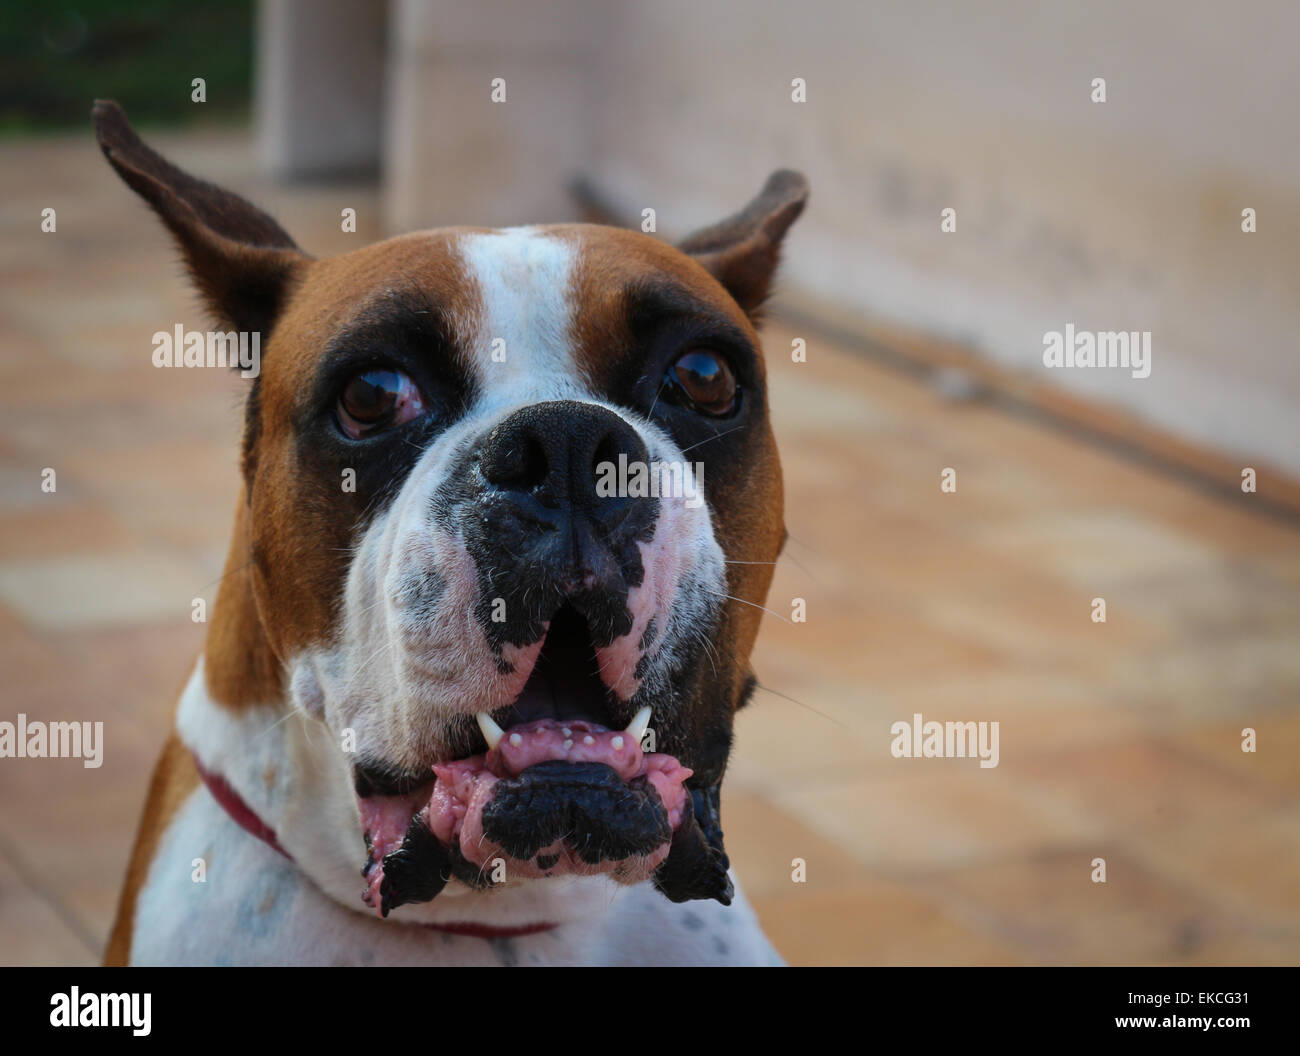 Angry Dog Stock Photo